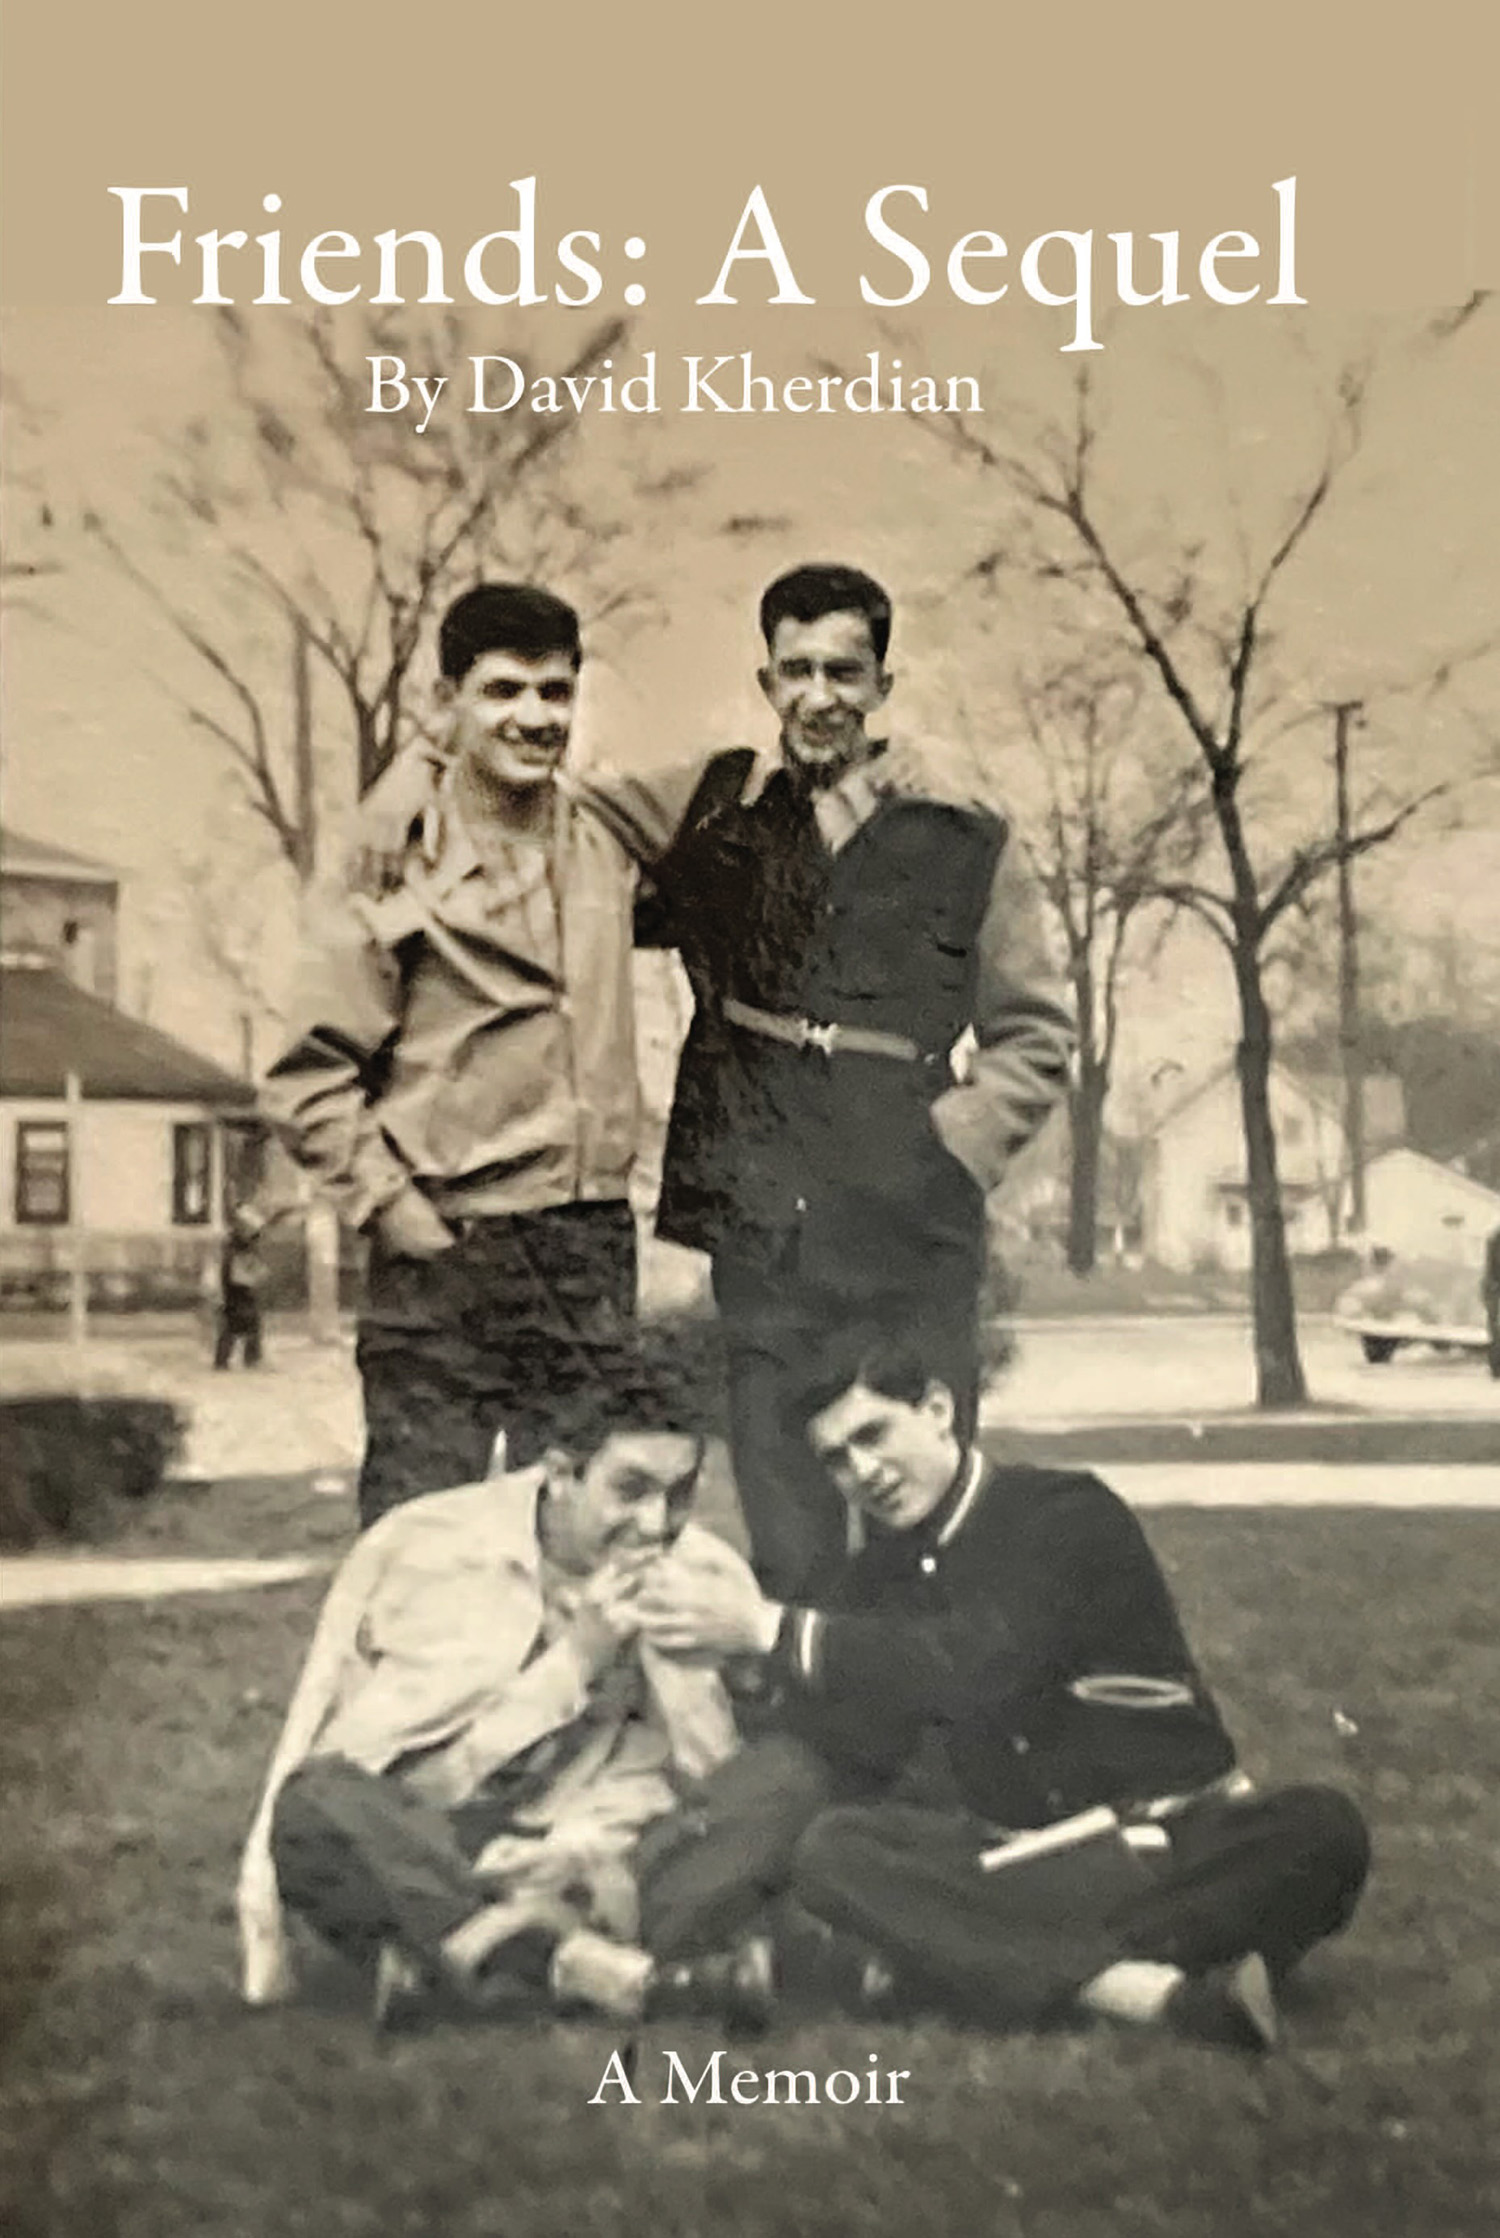 Friends: A Sequel - A memoir by David Kherdian